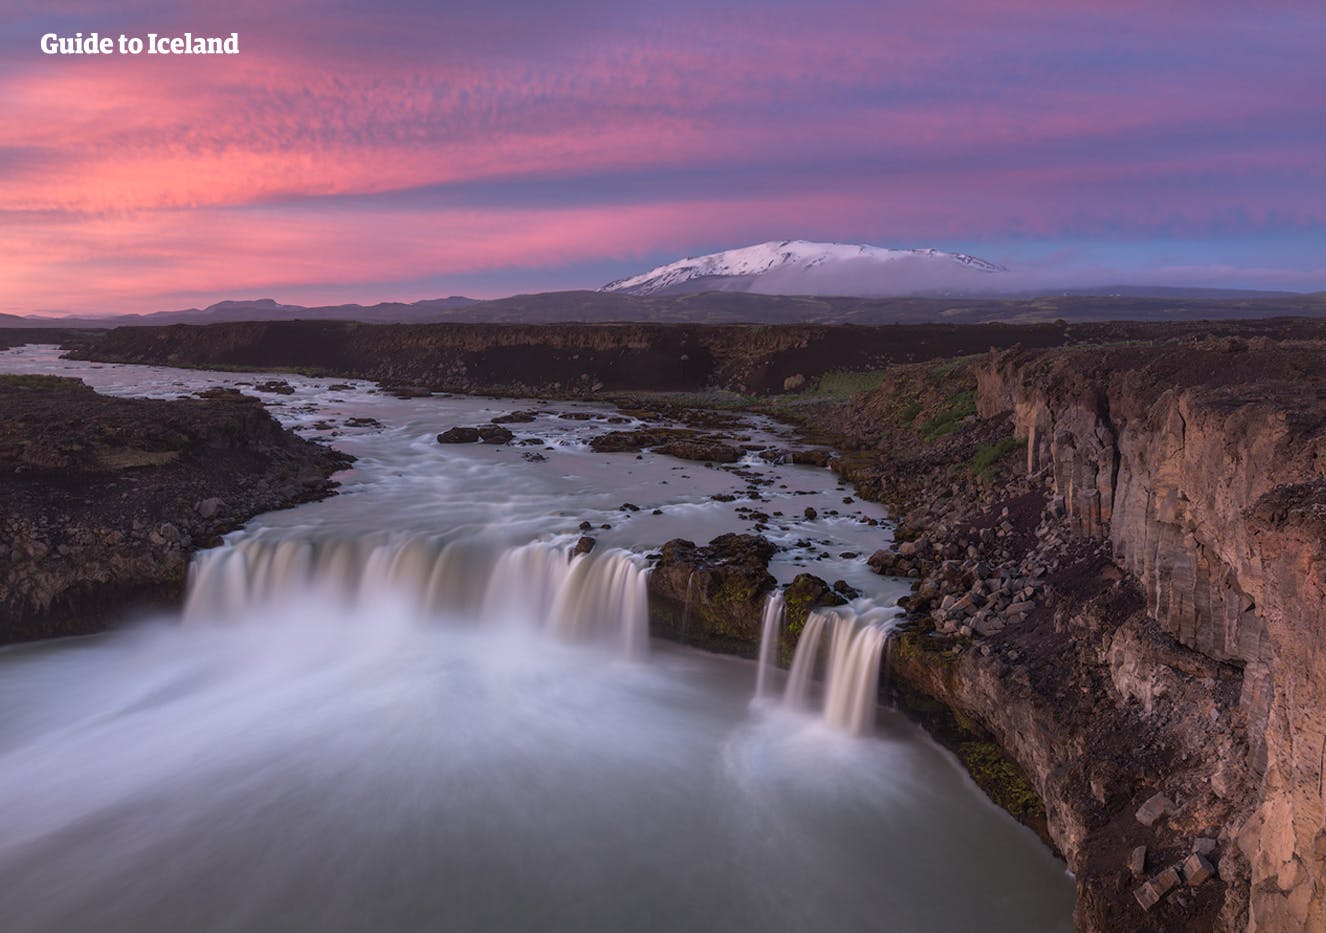 La cascada de Goðafoss se encuentra cerca de la ciudad de Akureyri y su historia coincide con su belleza natural.